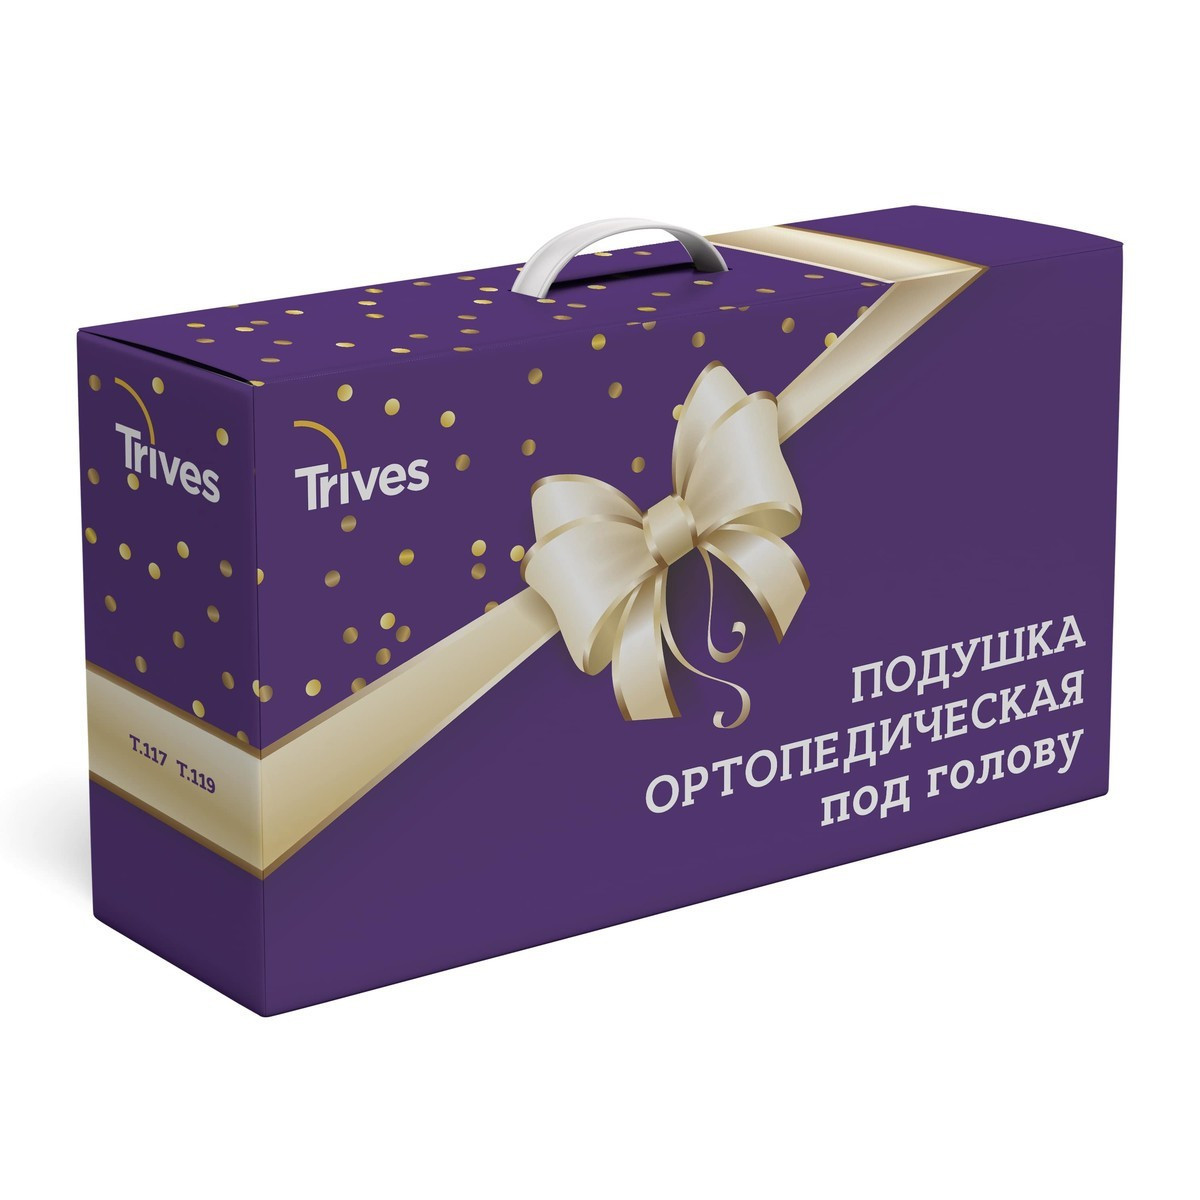 

Ортопедическая подушка с эффектом памяти Trives ТОП-117 (в подарочной упаковке)